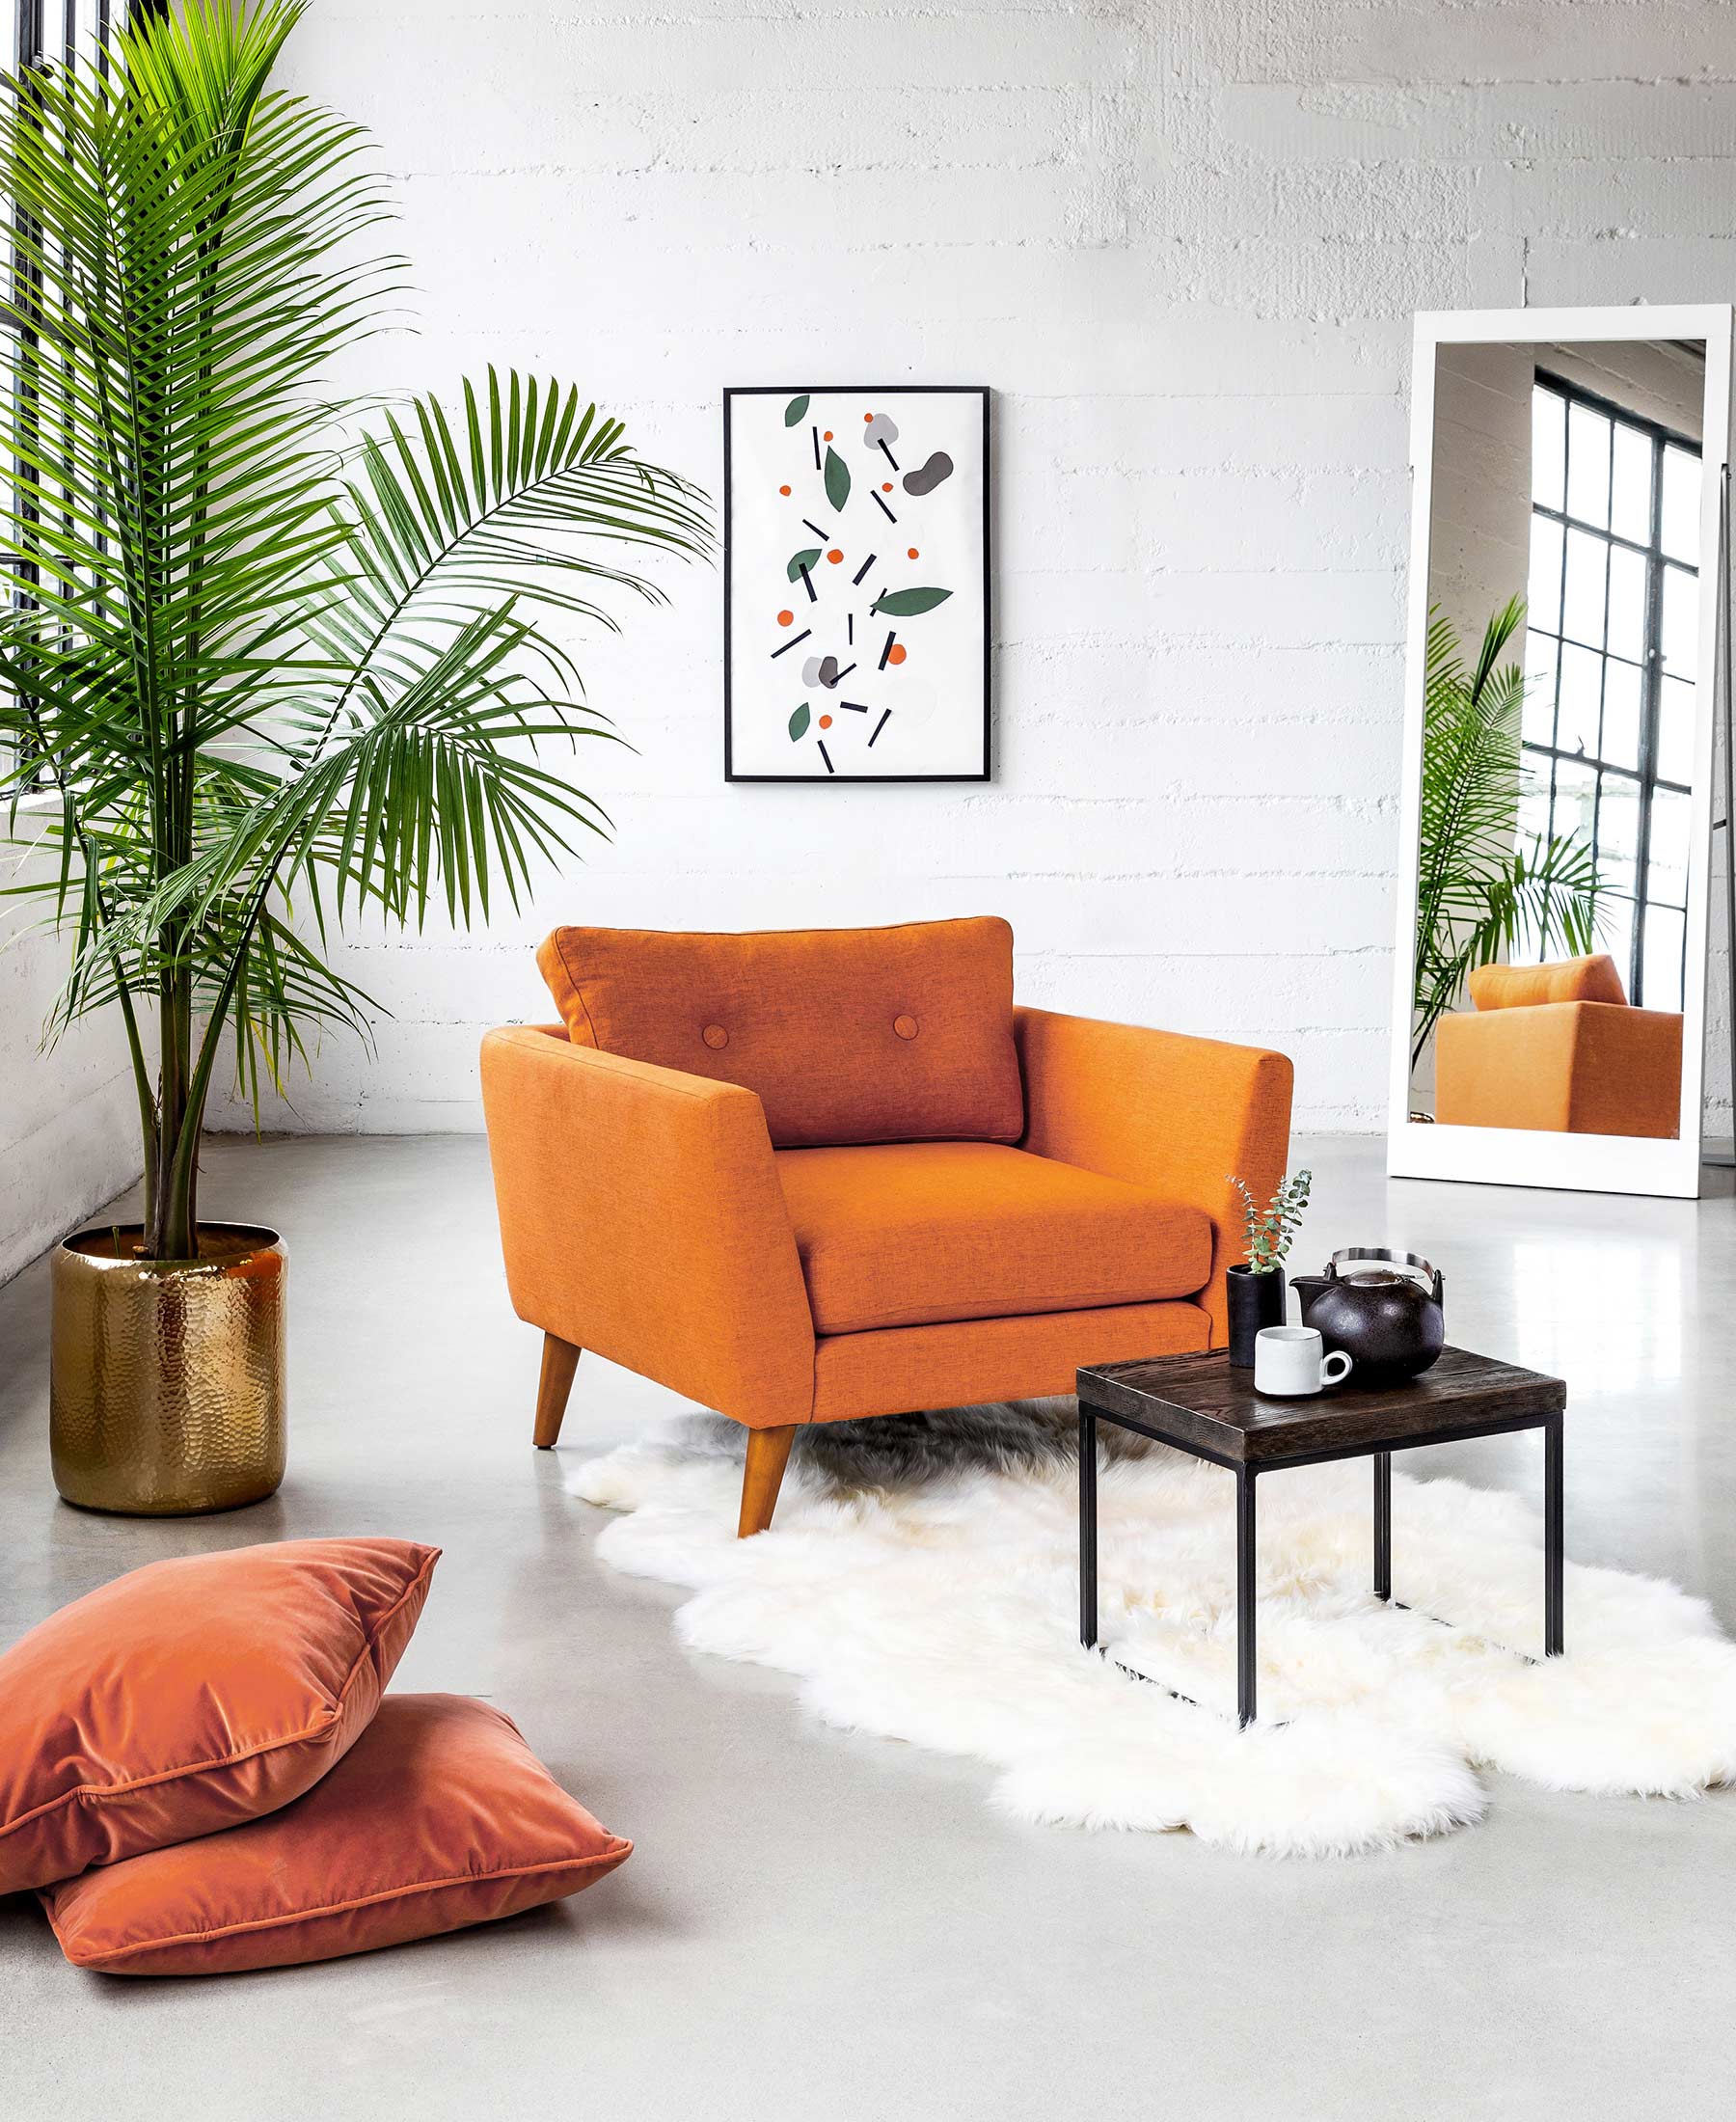 Simple Living Room Ideas Articulate,Design Pinterest Crochet Patterns